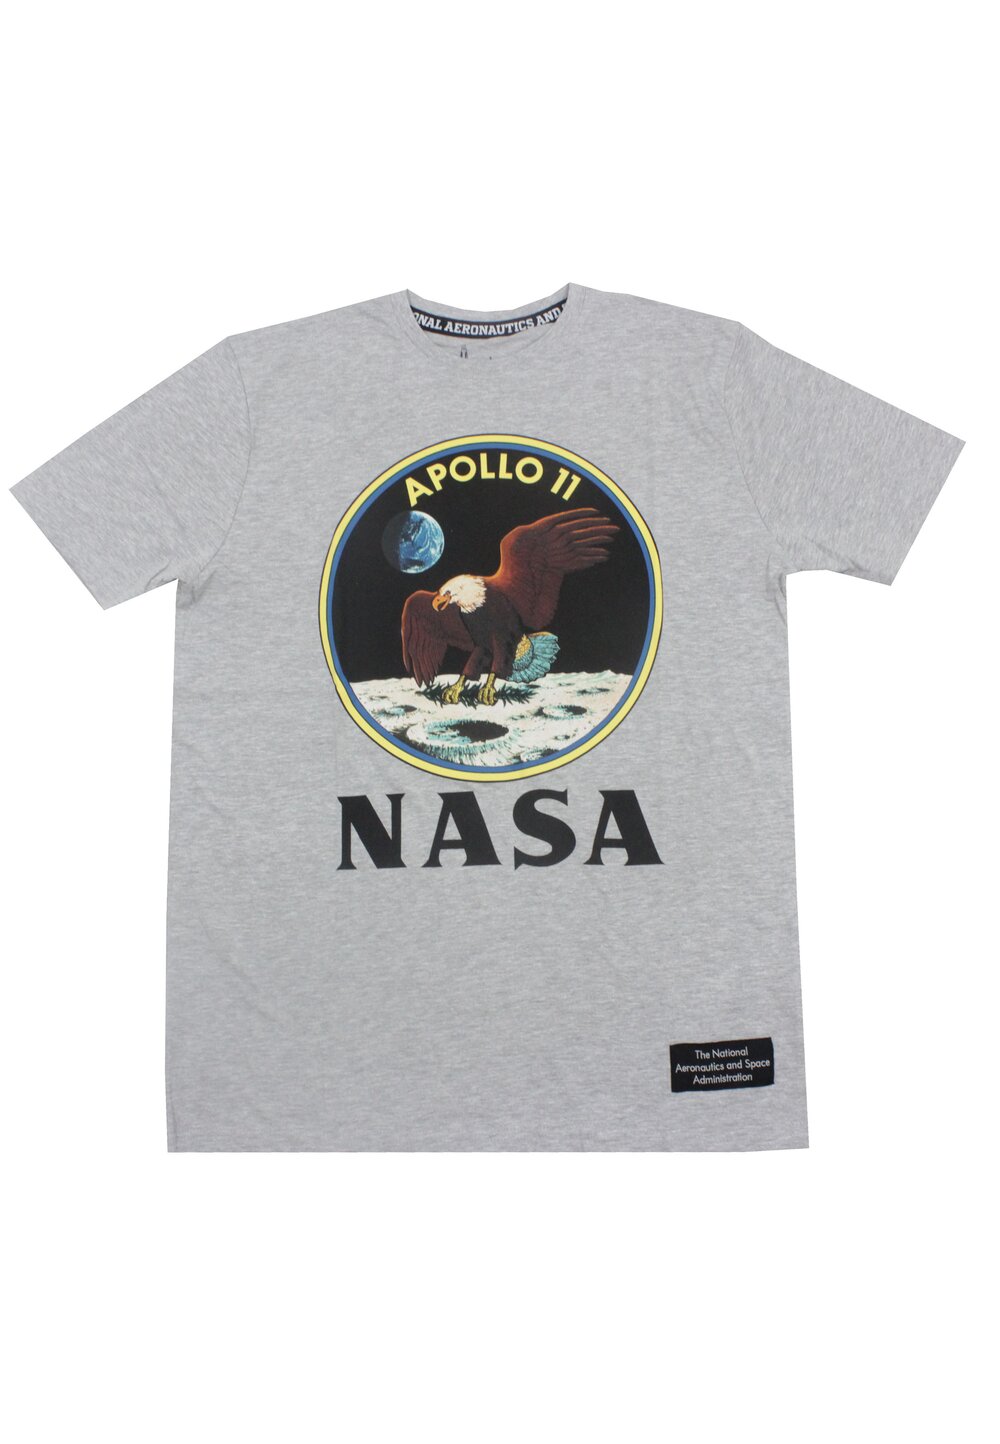 Tricou adulti, bumbac, Apollo 11, Nasa, gri 11